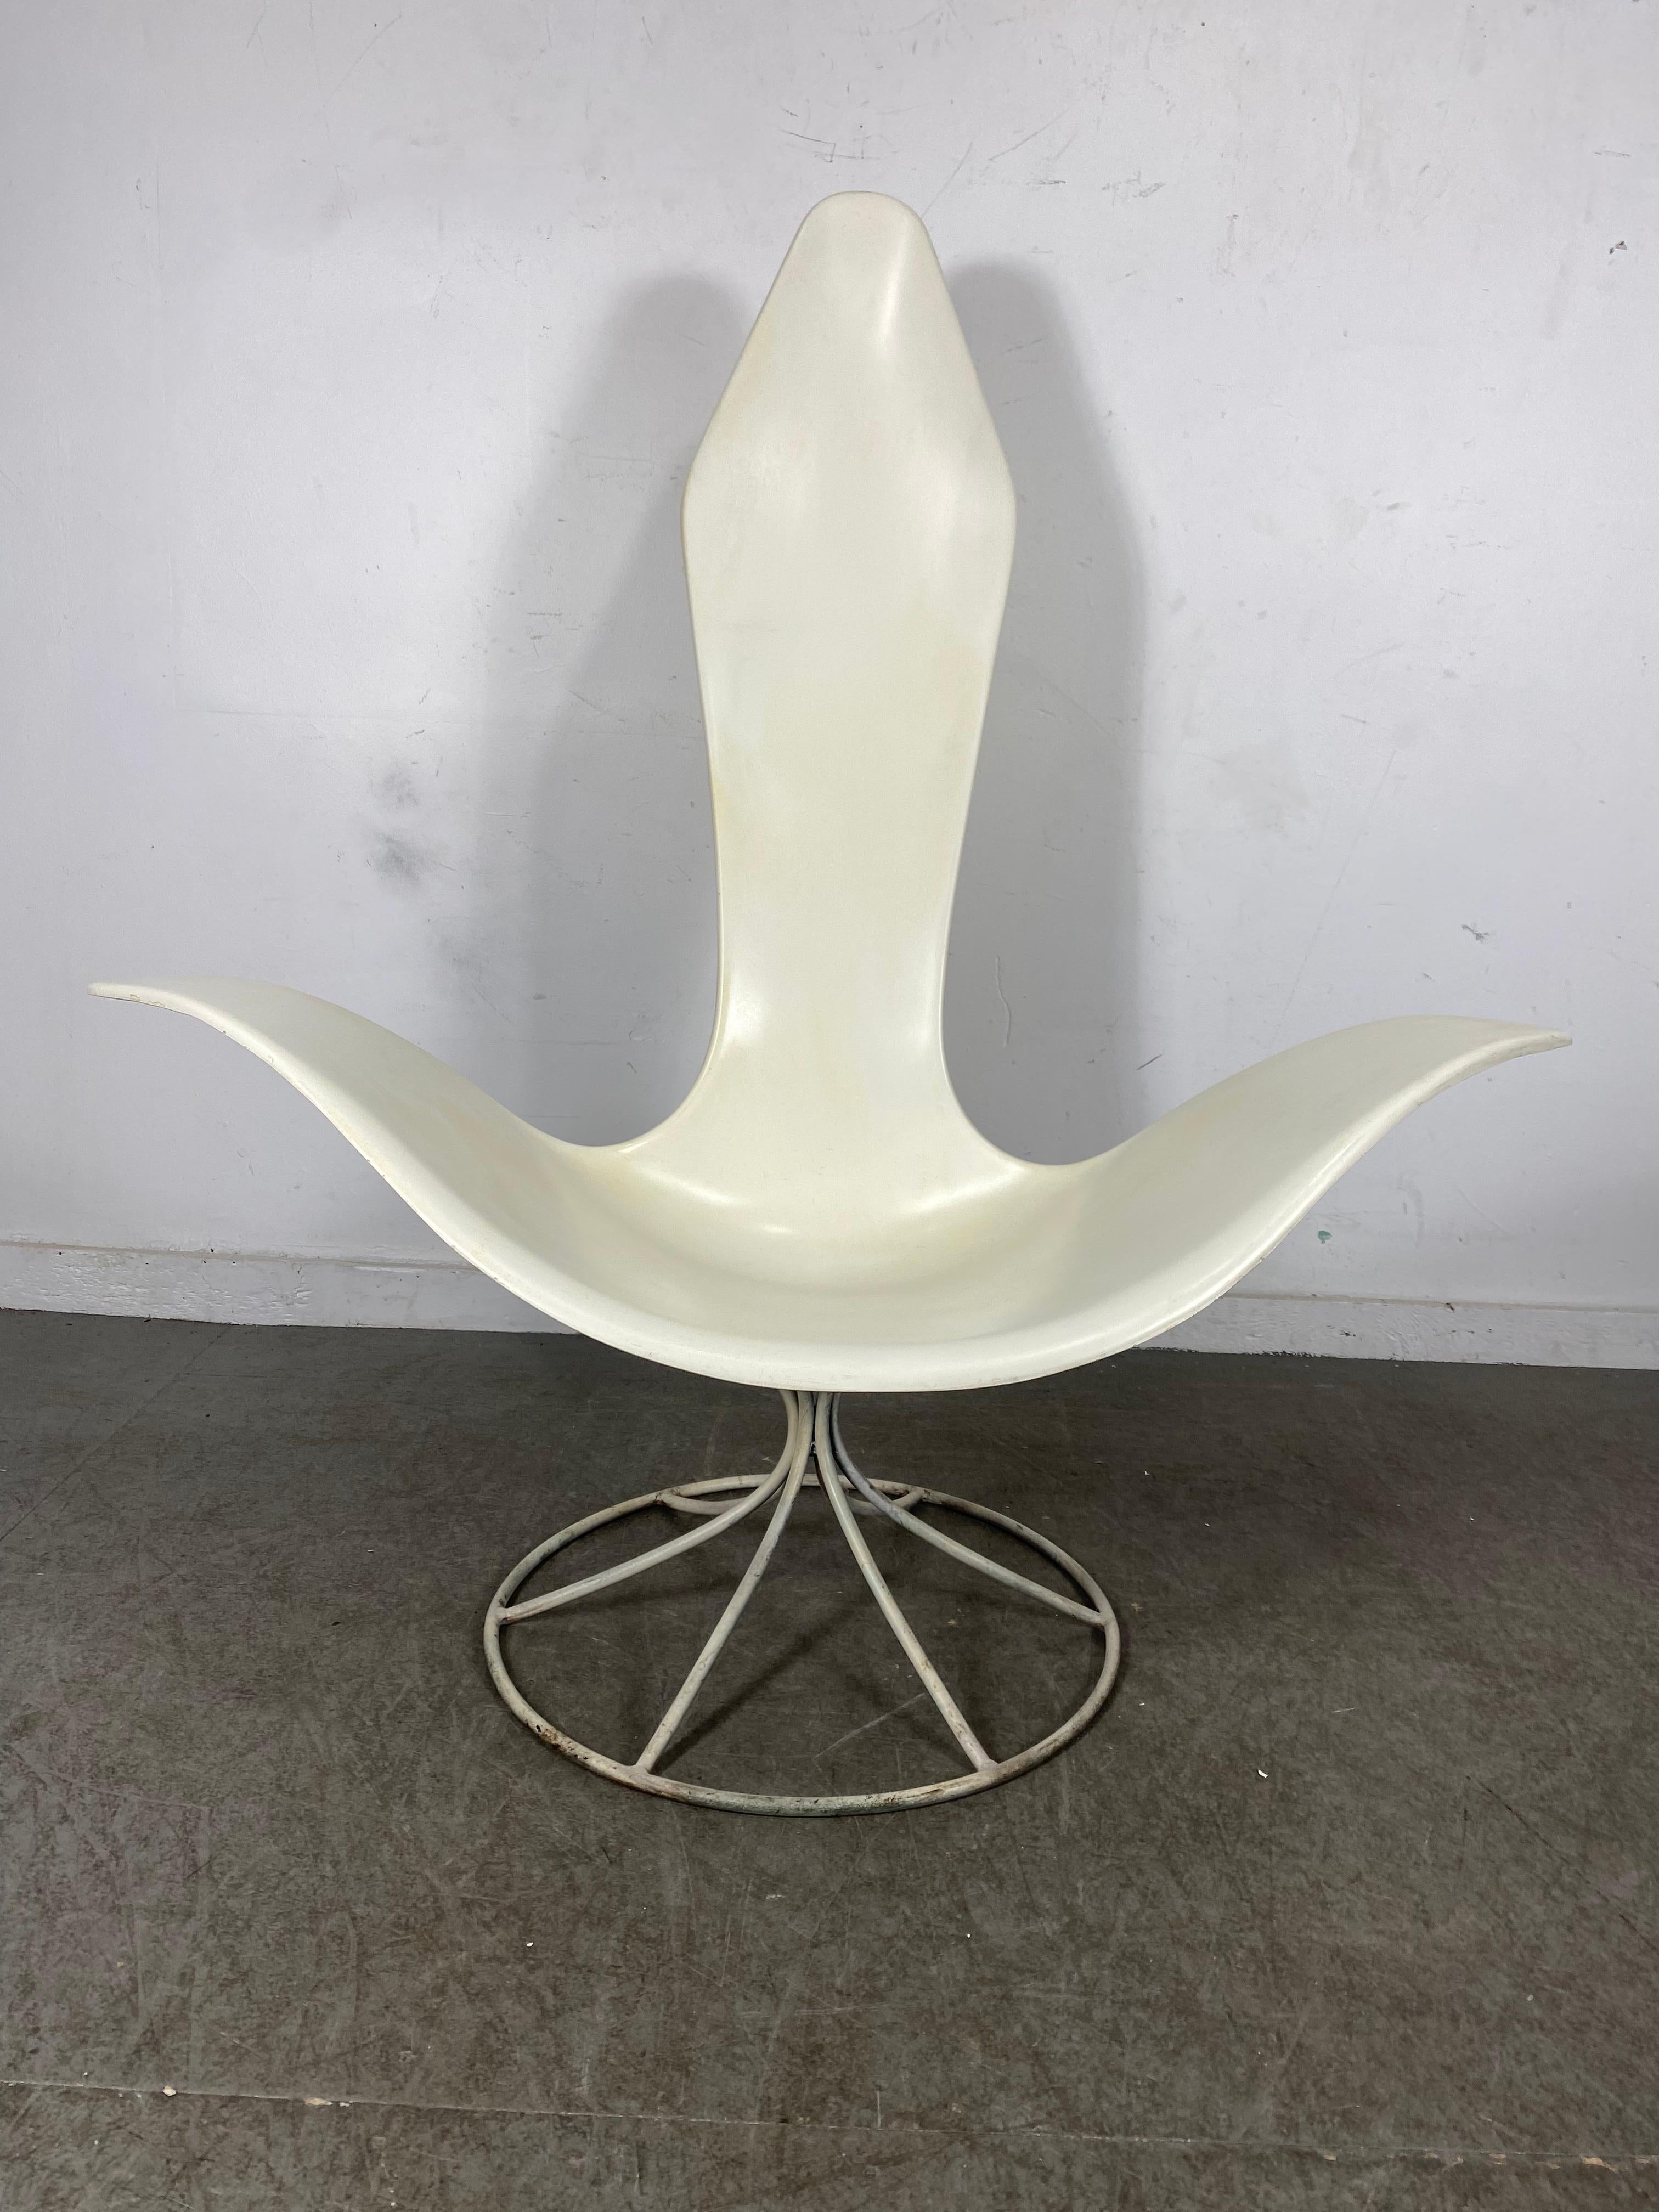 Dieser unglaubliche Entwurf ist ein Loungesessel Modell 120 LF 'Tulip' von Erwine und Estelle Laverne für Laverne International. Dieser 1957 entworfene, weit ausladende Sessel ist aus geformtem Fiberglas und emailliertem Stahl gefertigt. Auch behält